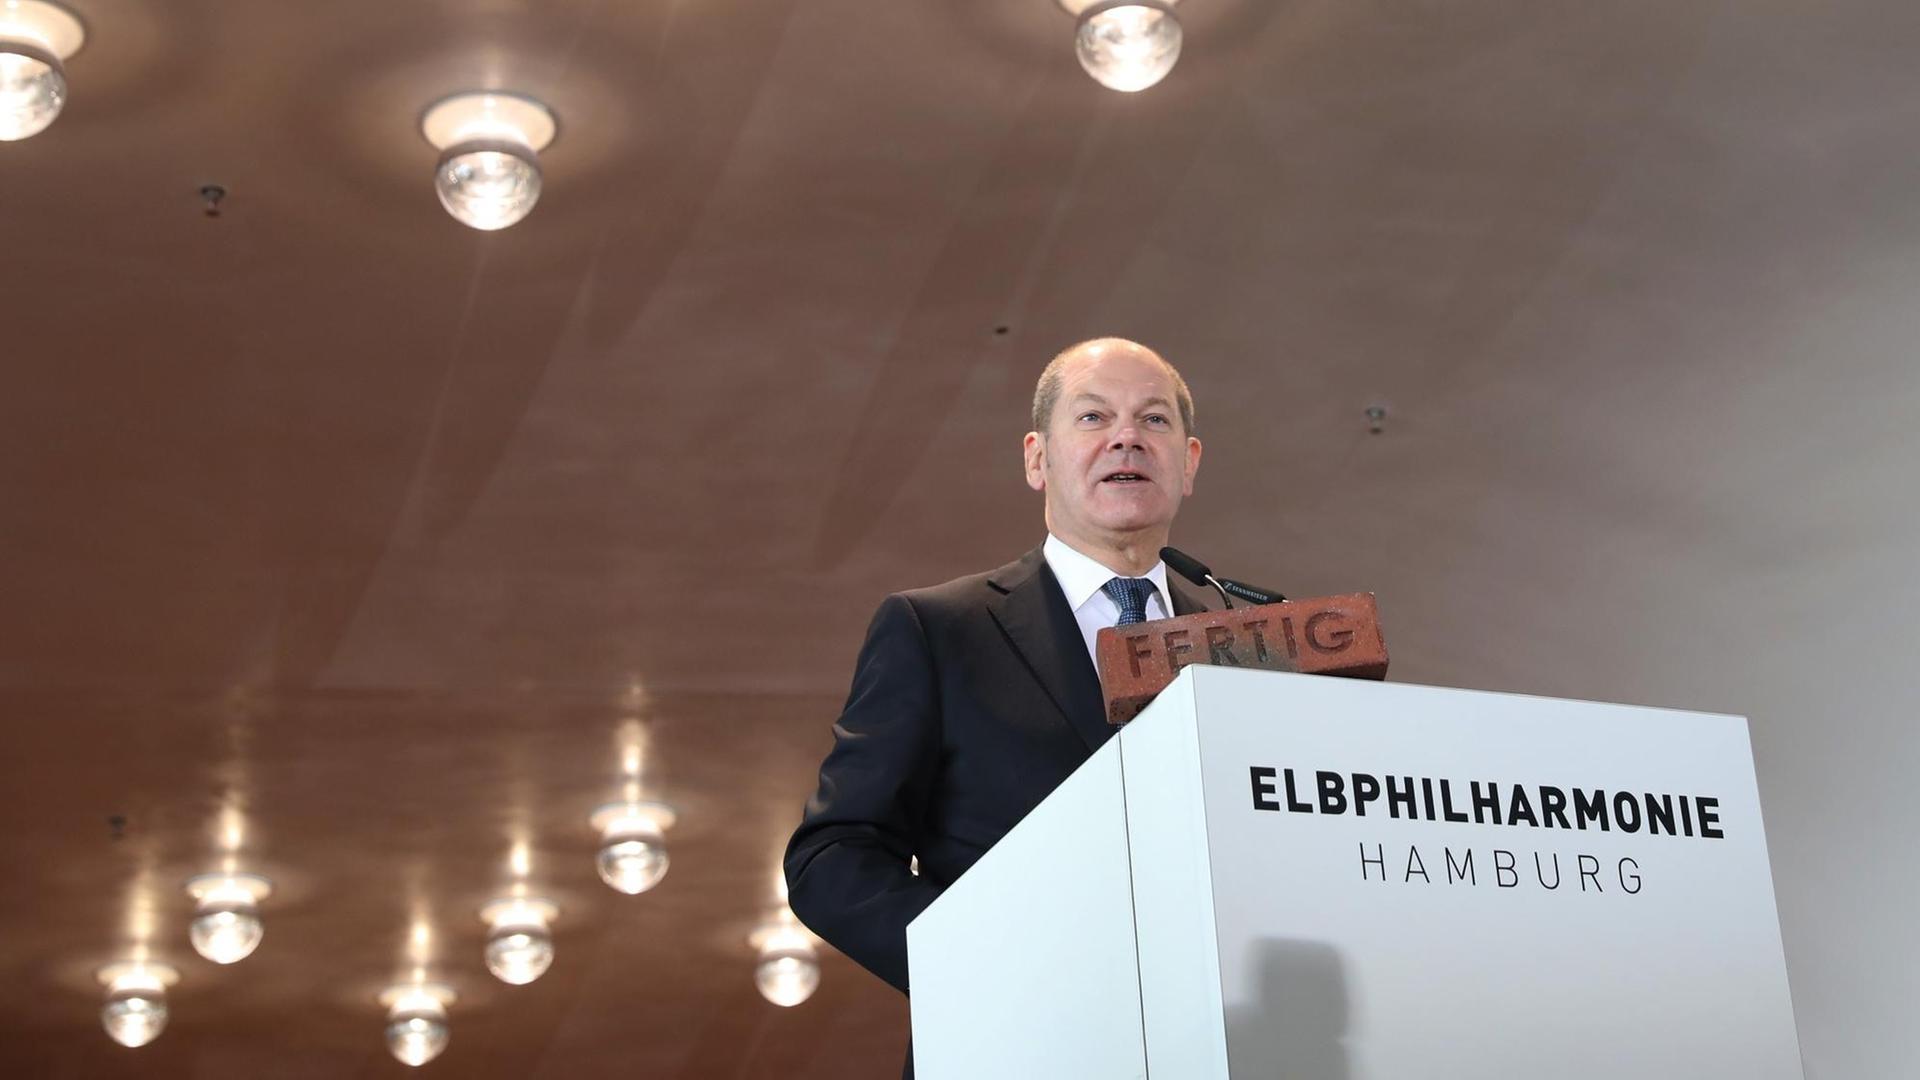 Hamburgs Erster Bürgermeister Olaf Scholz (SPD) steht vor einem weißen Pult mit der Aufschrift "Elbphilharmonie".